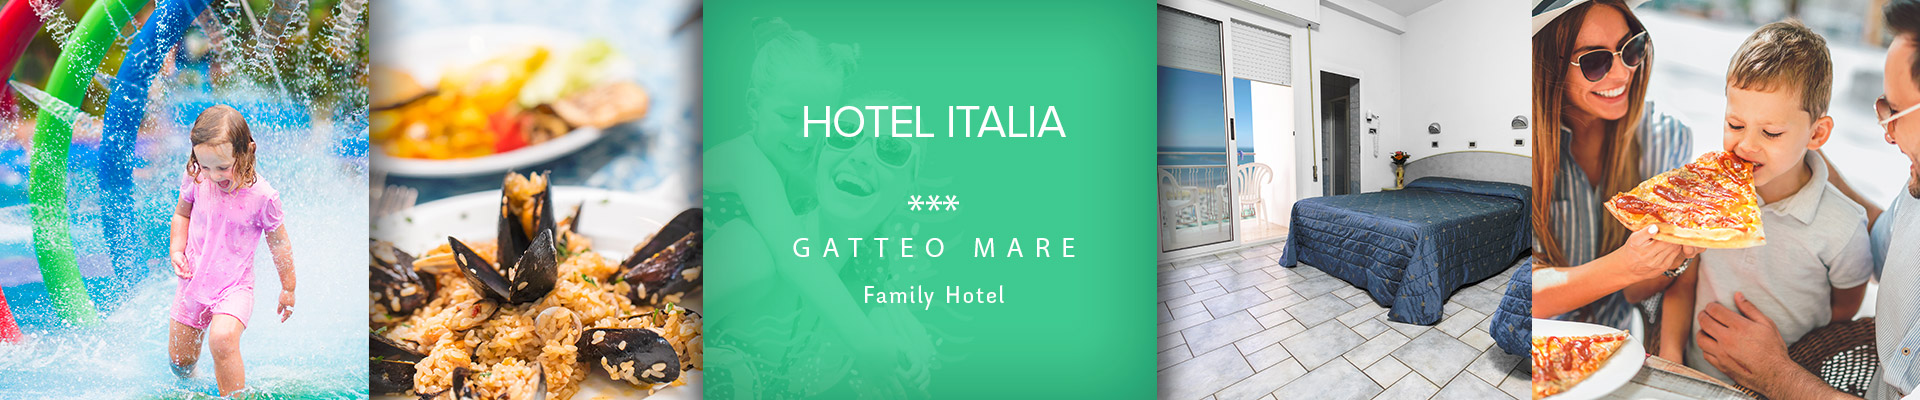 Hotel Italia Gatteo Mare